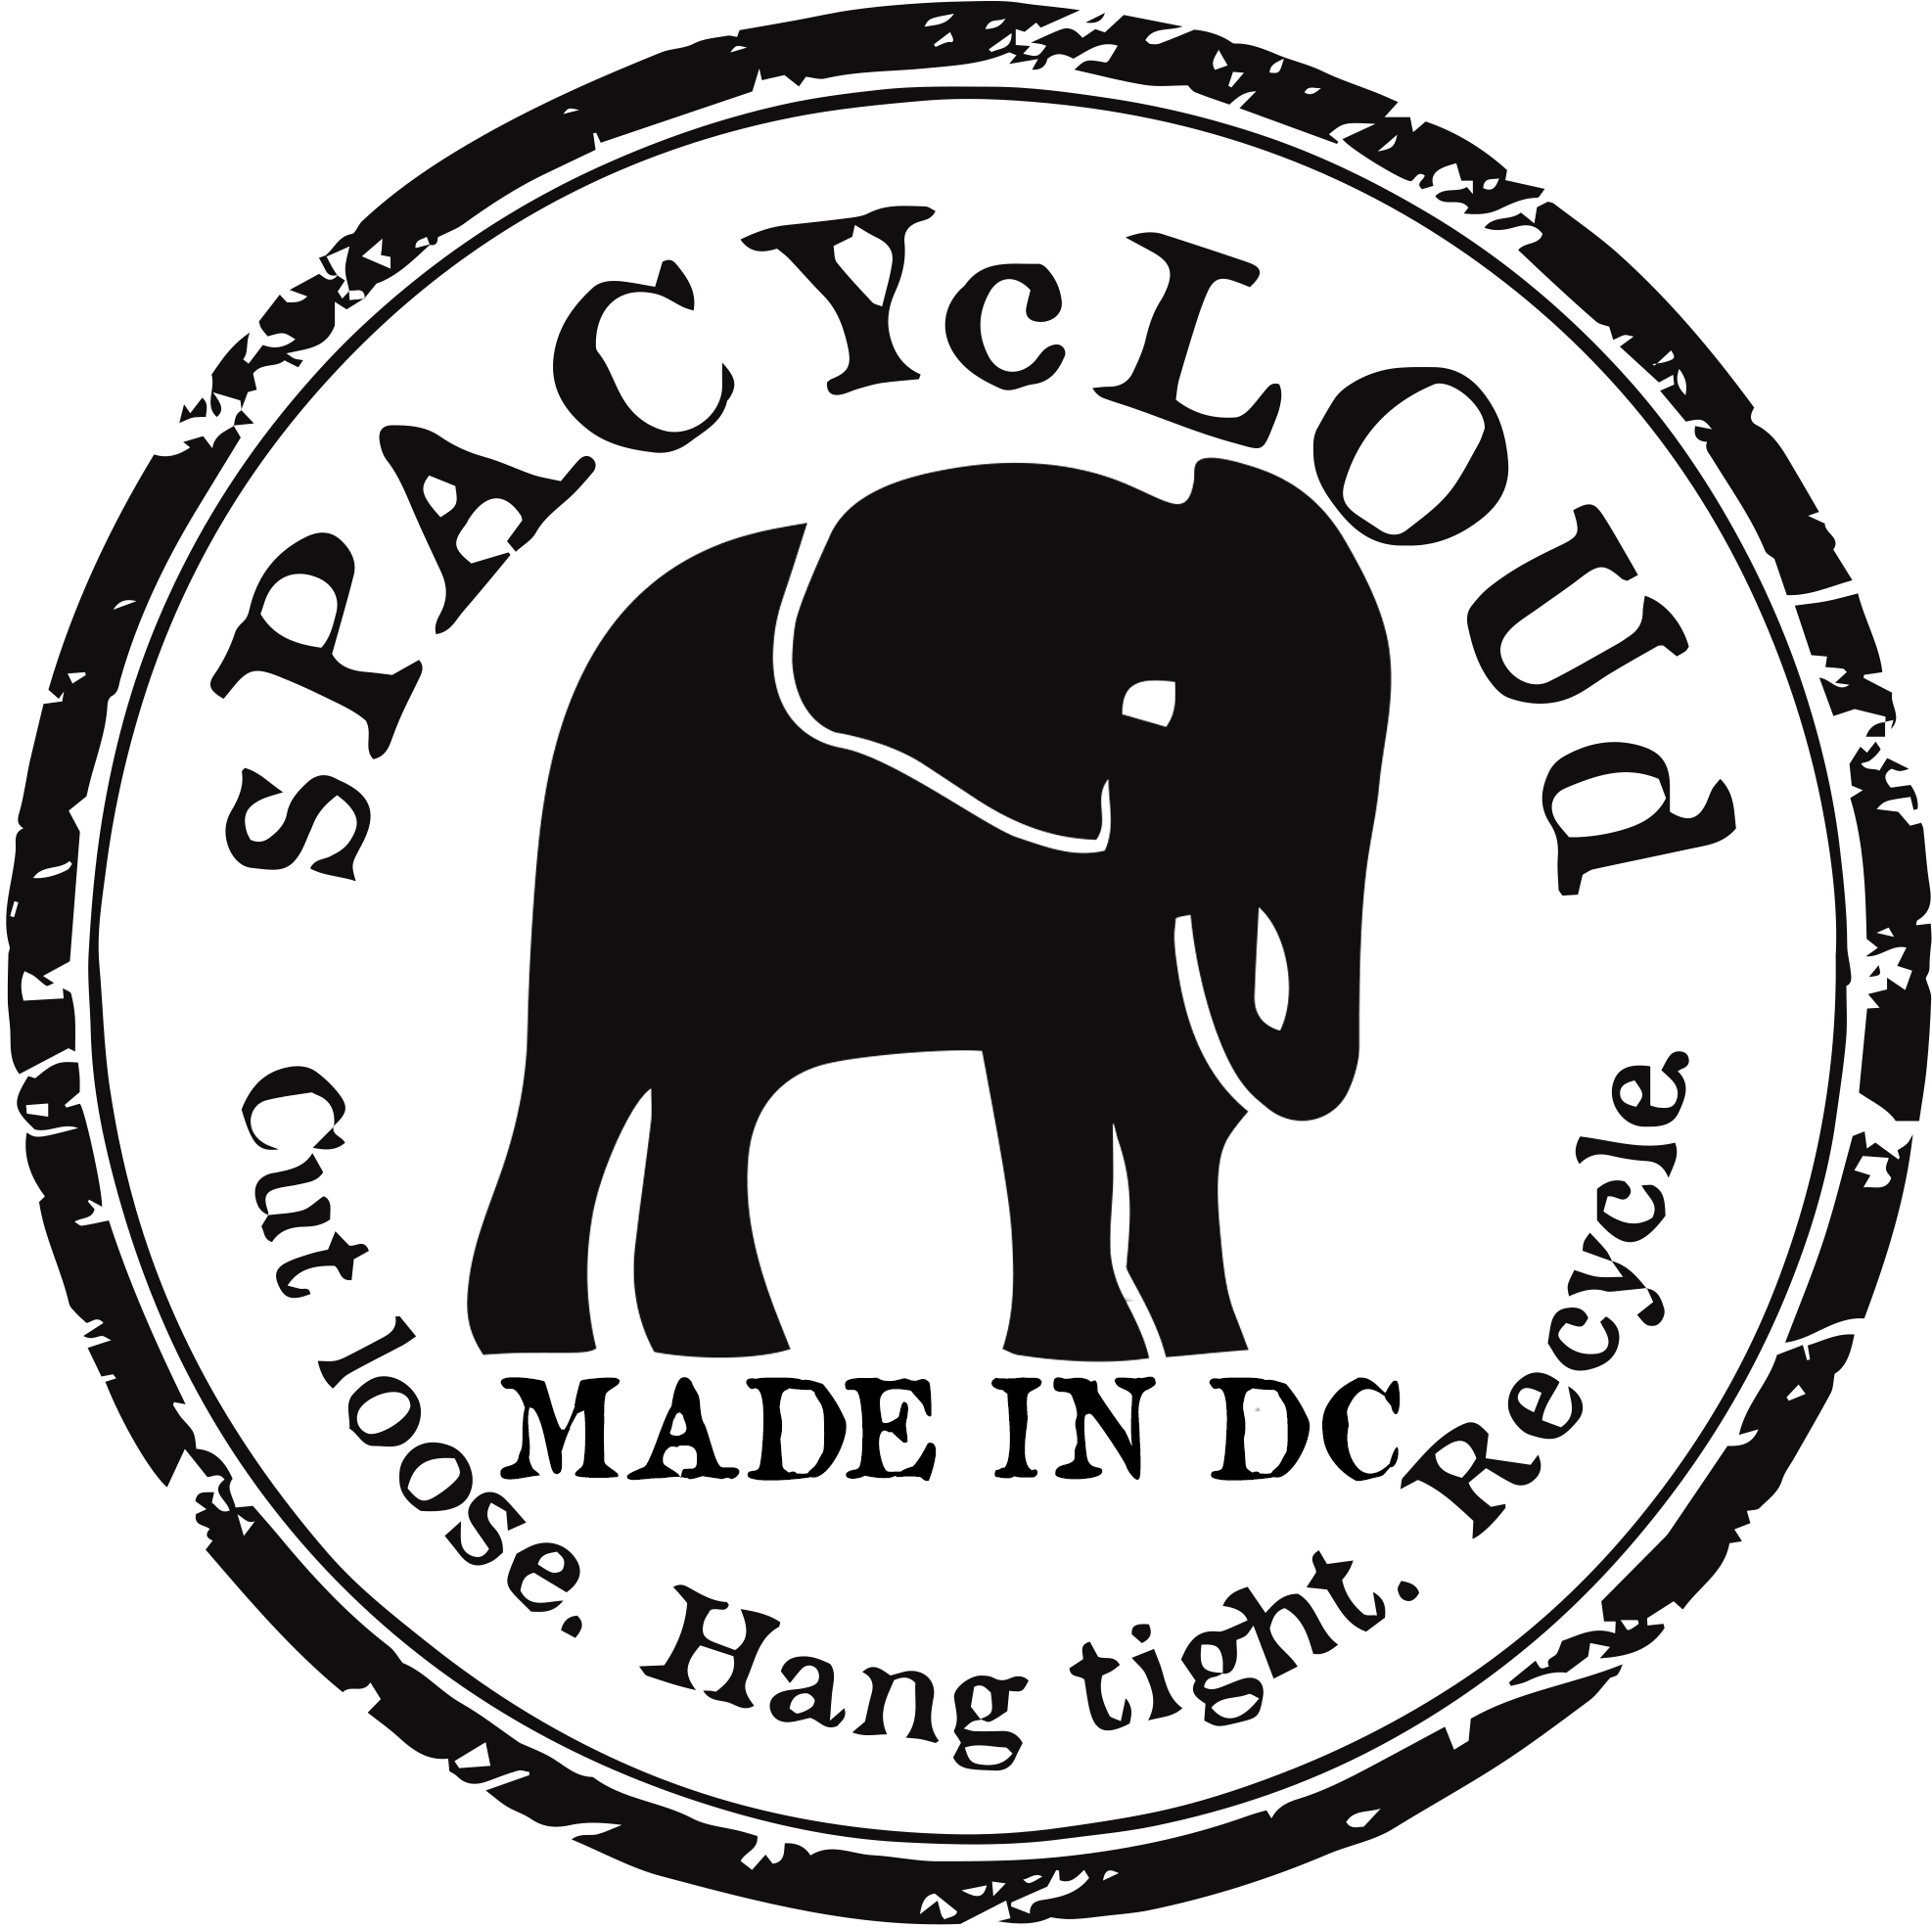 sPACYcLOUD_Logo_MadeINDC.png